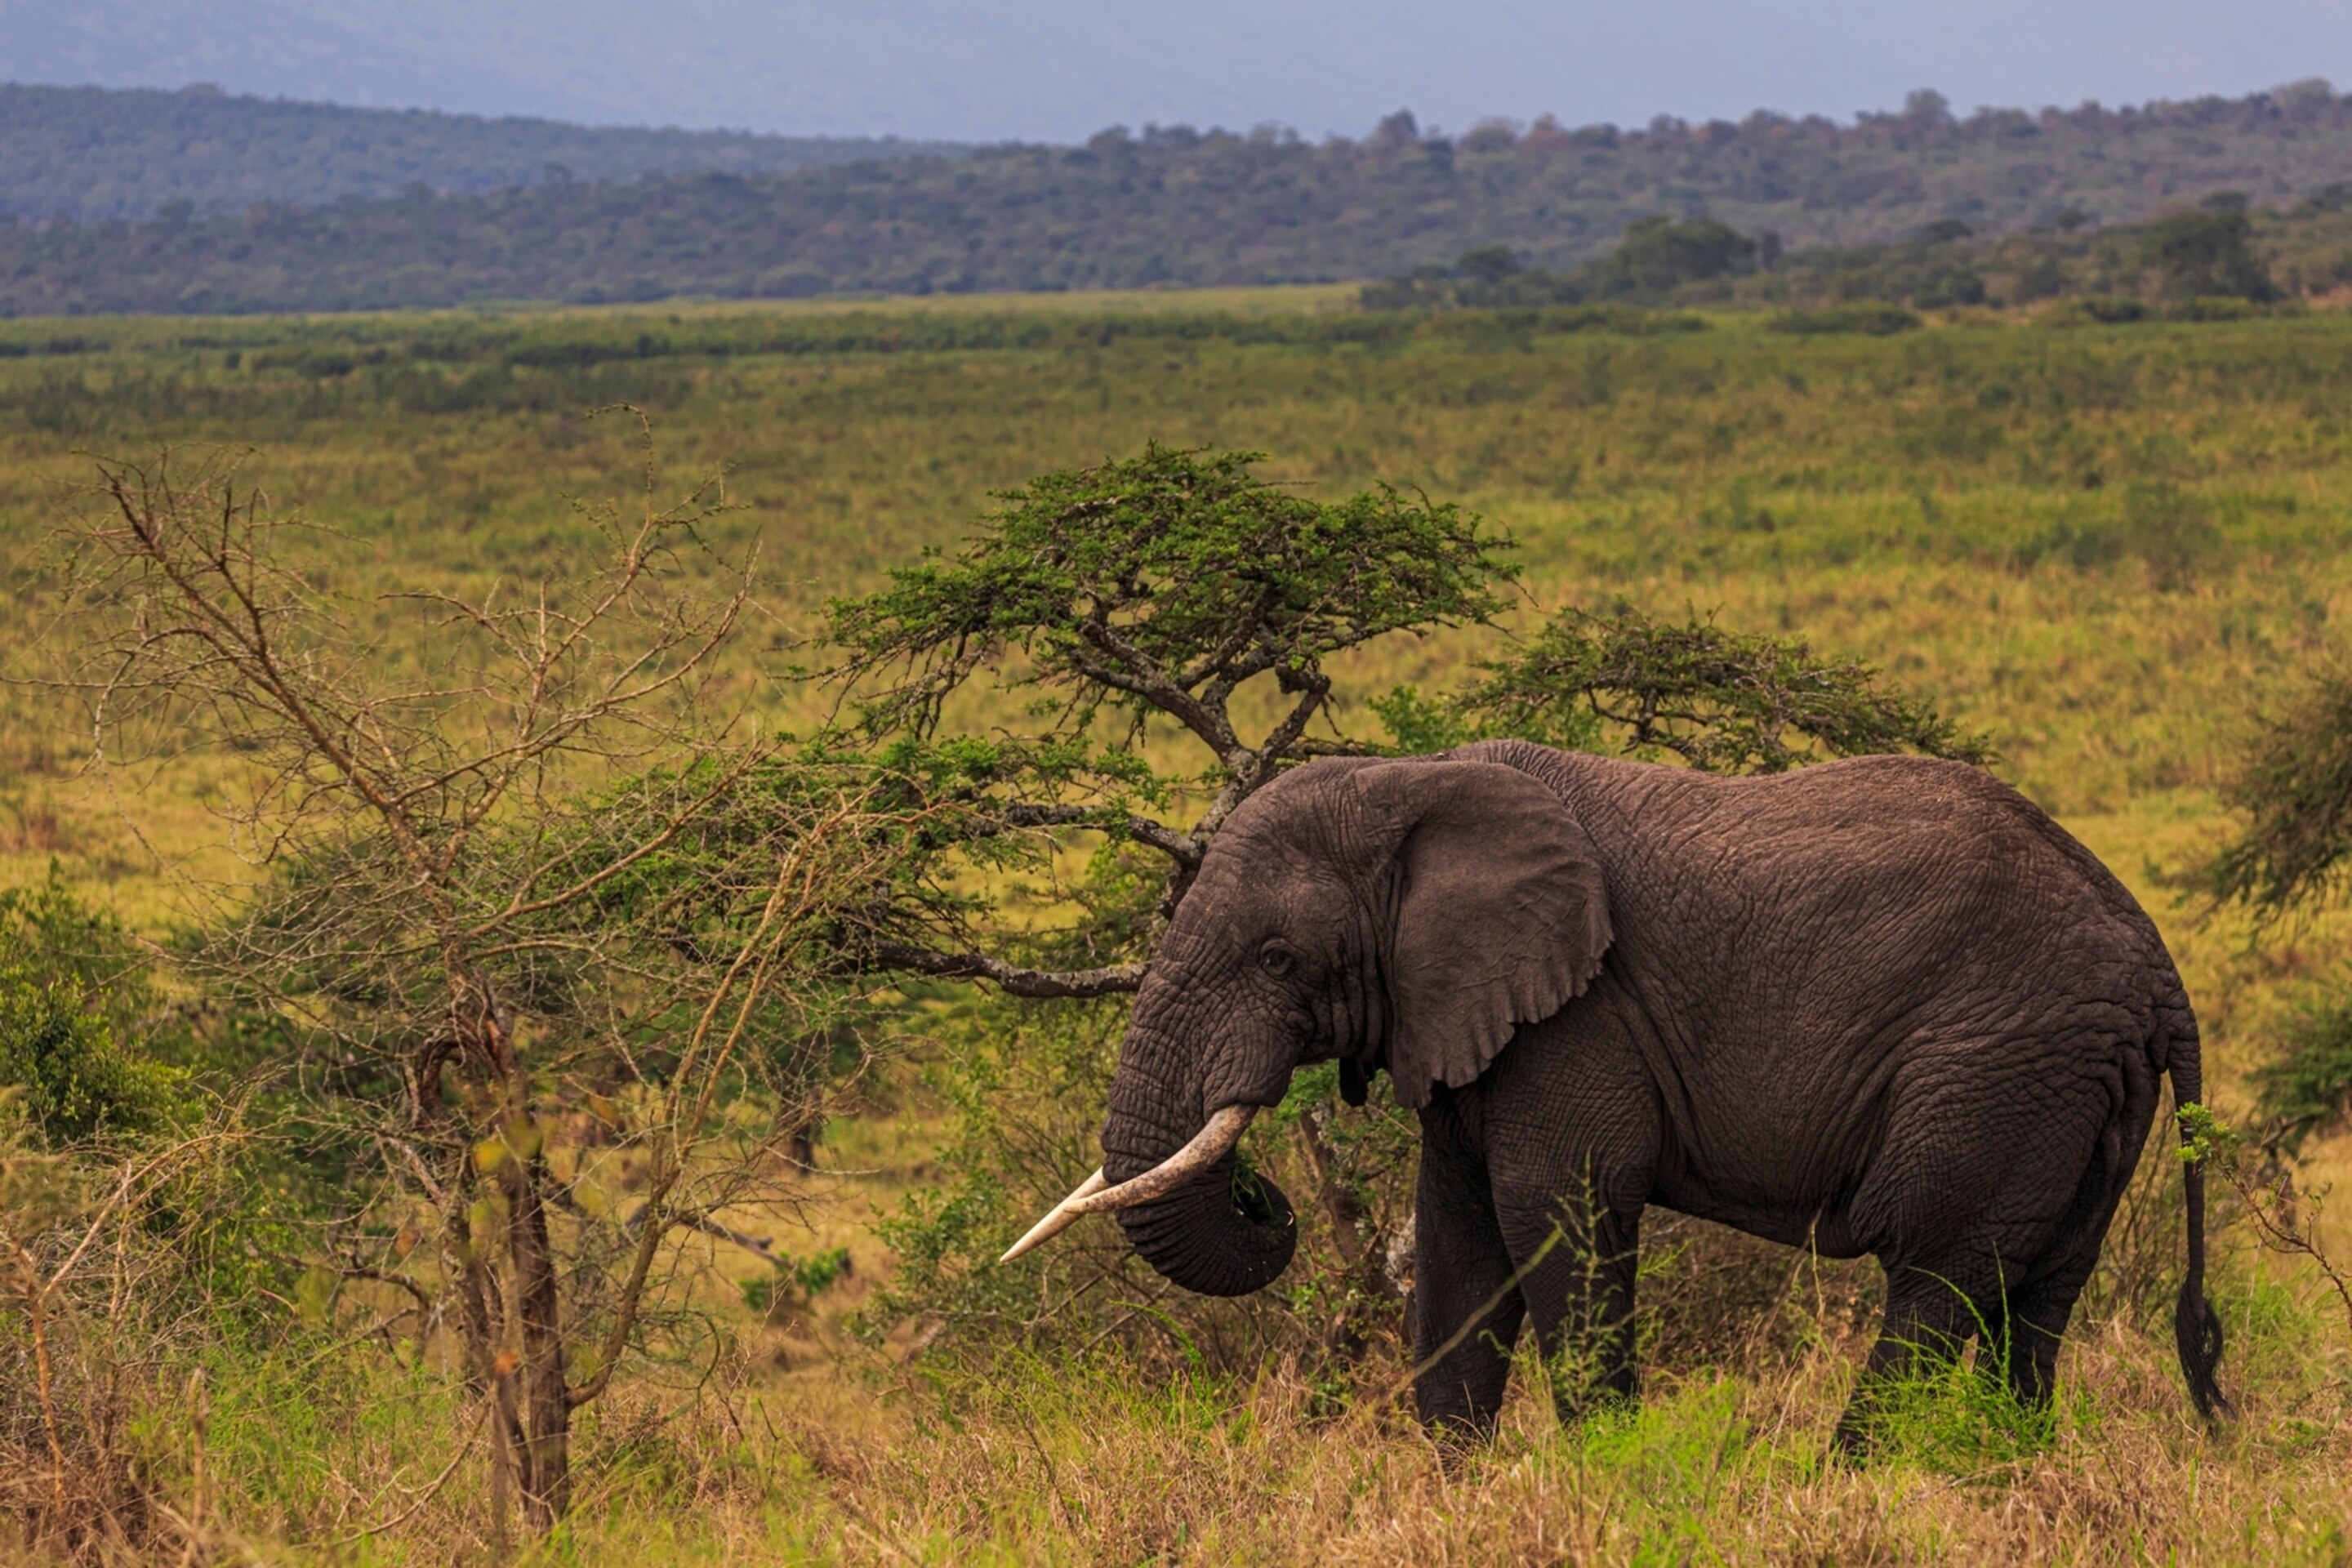 10 Days Rwanda Wildlife Safari